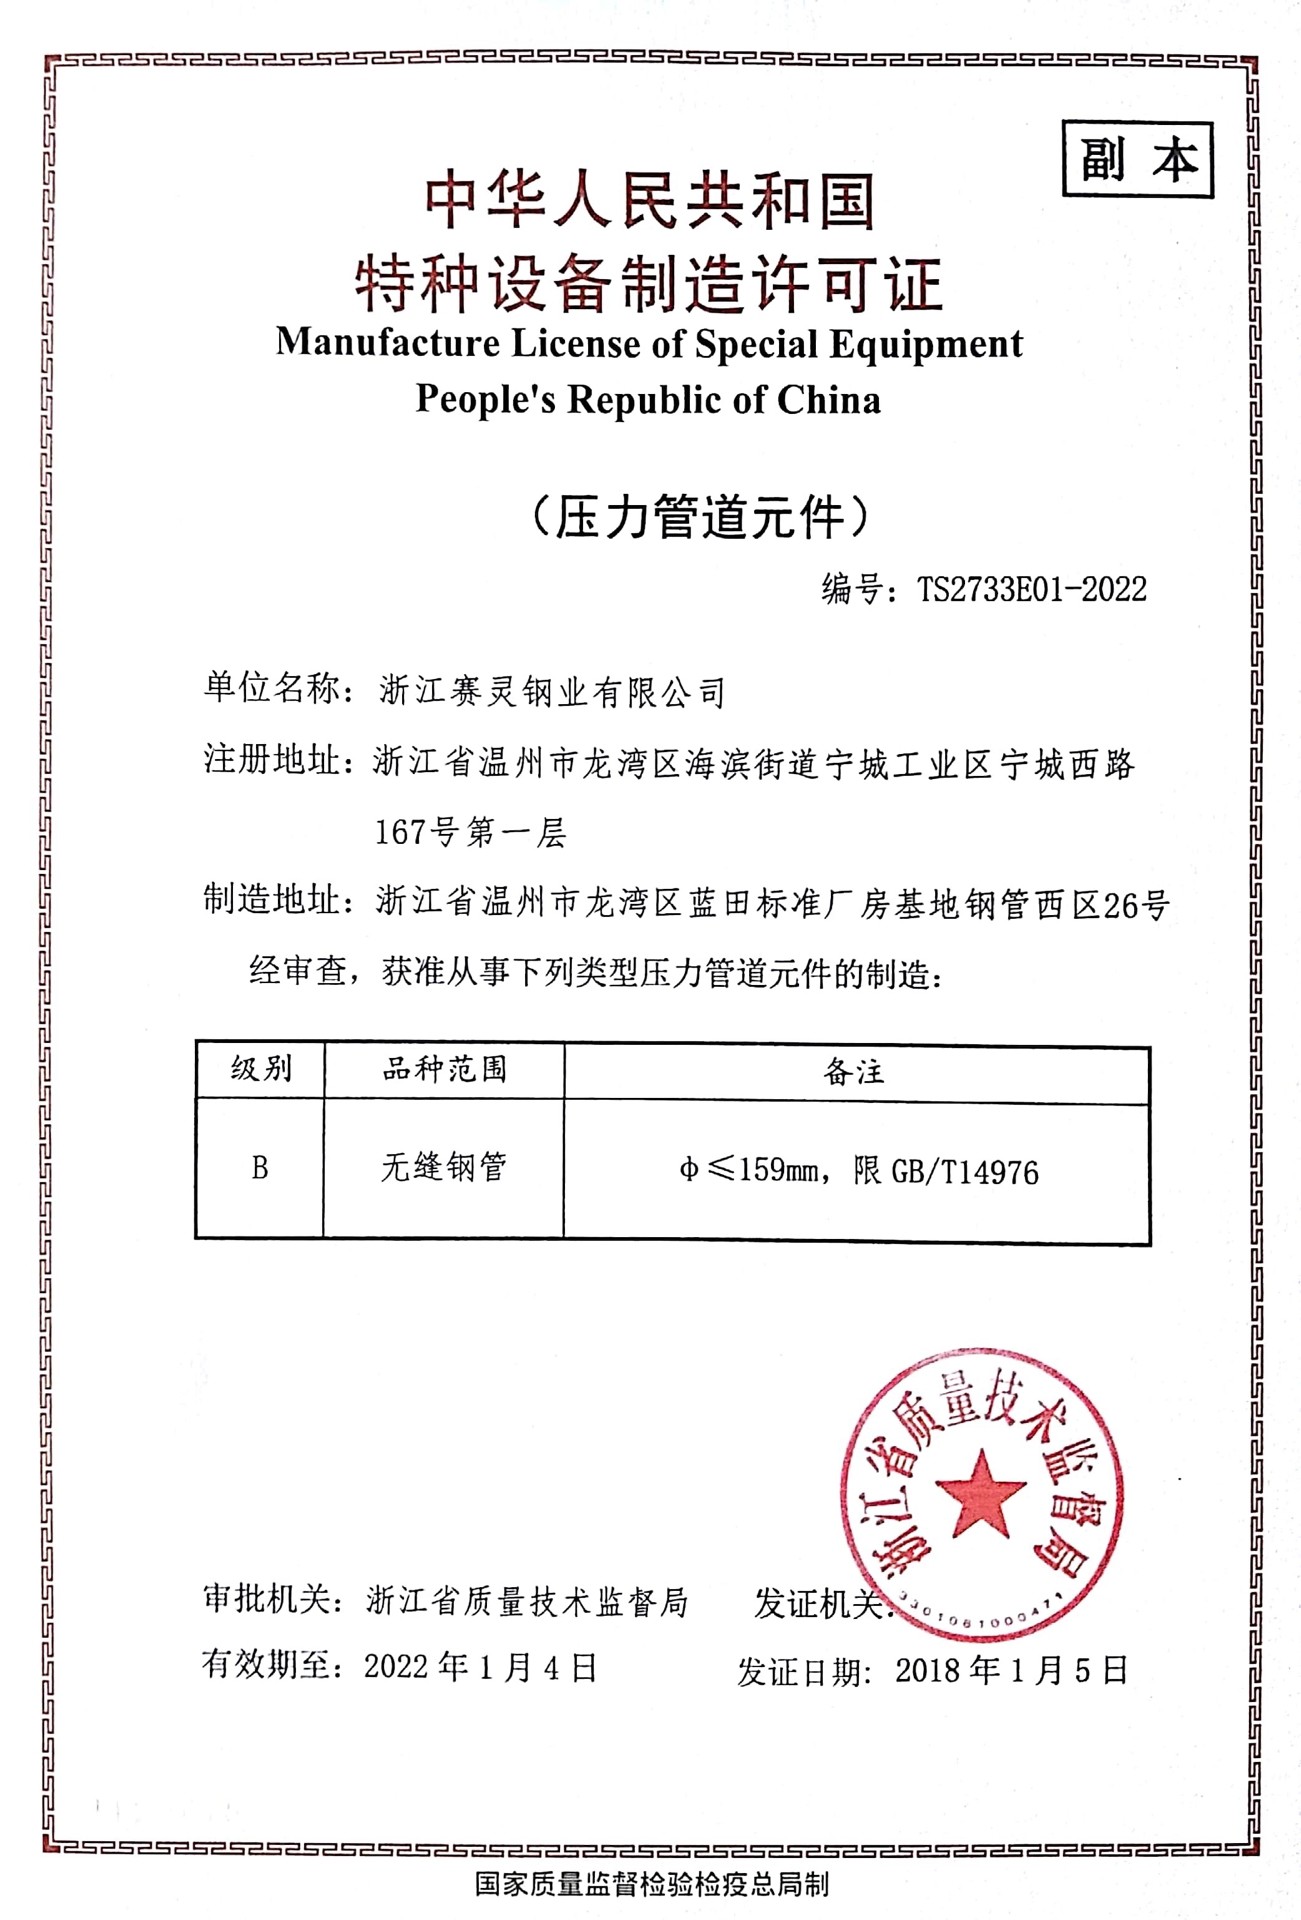 ZHEJIANG SAILING STEEL INDUSTRY CO., LTD. Certifications